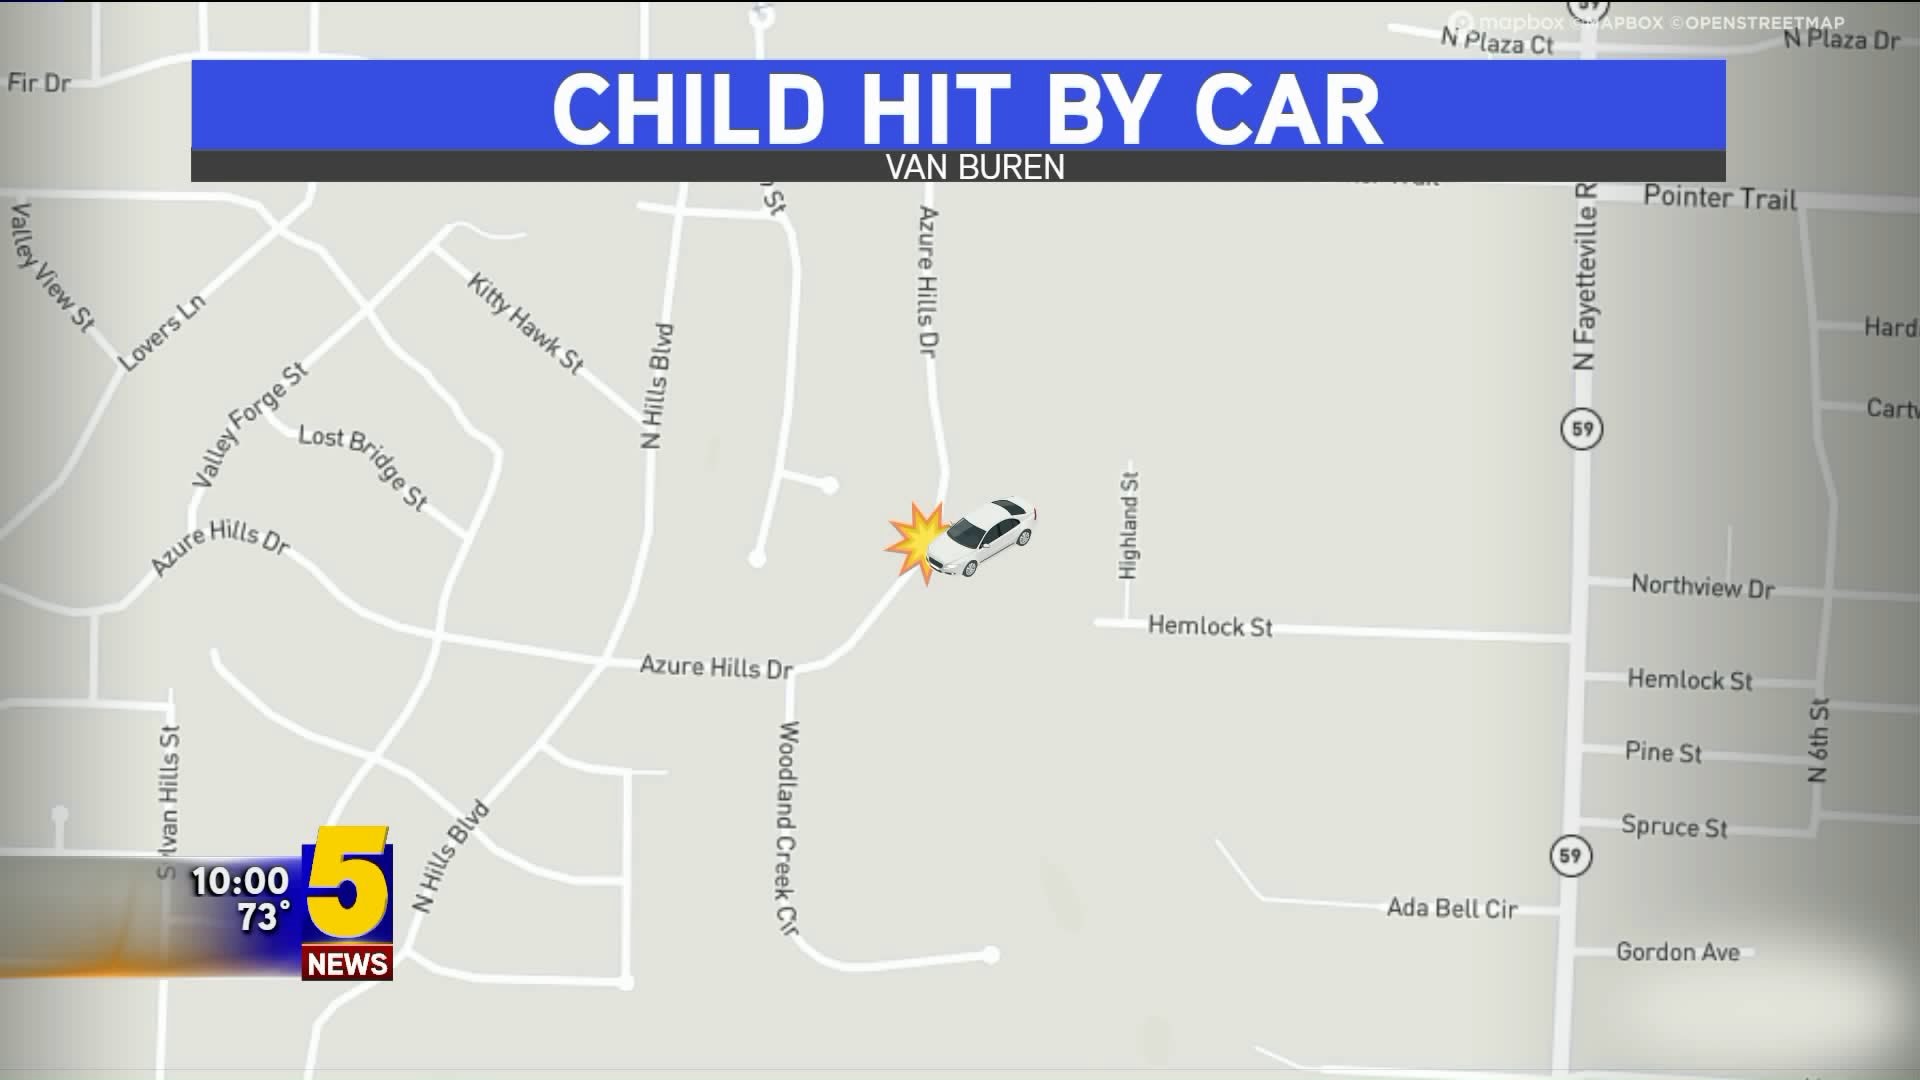 Child Hit By Car in Van Buren